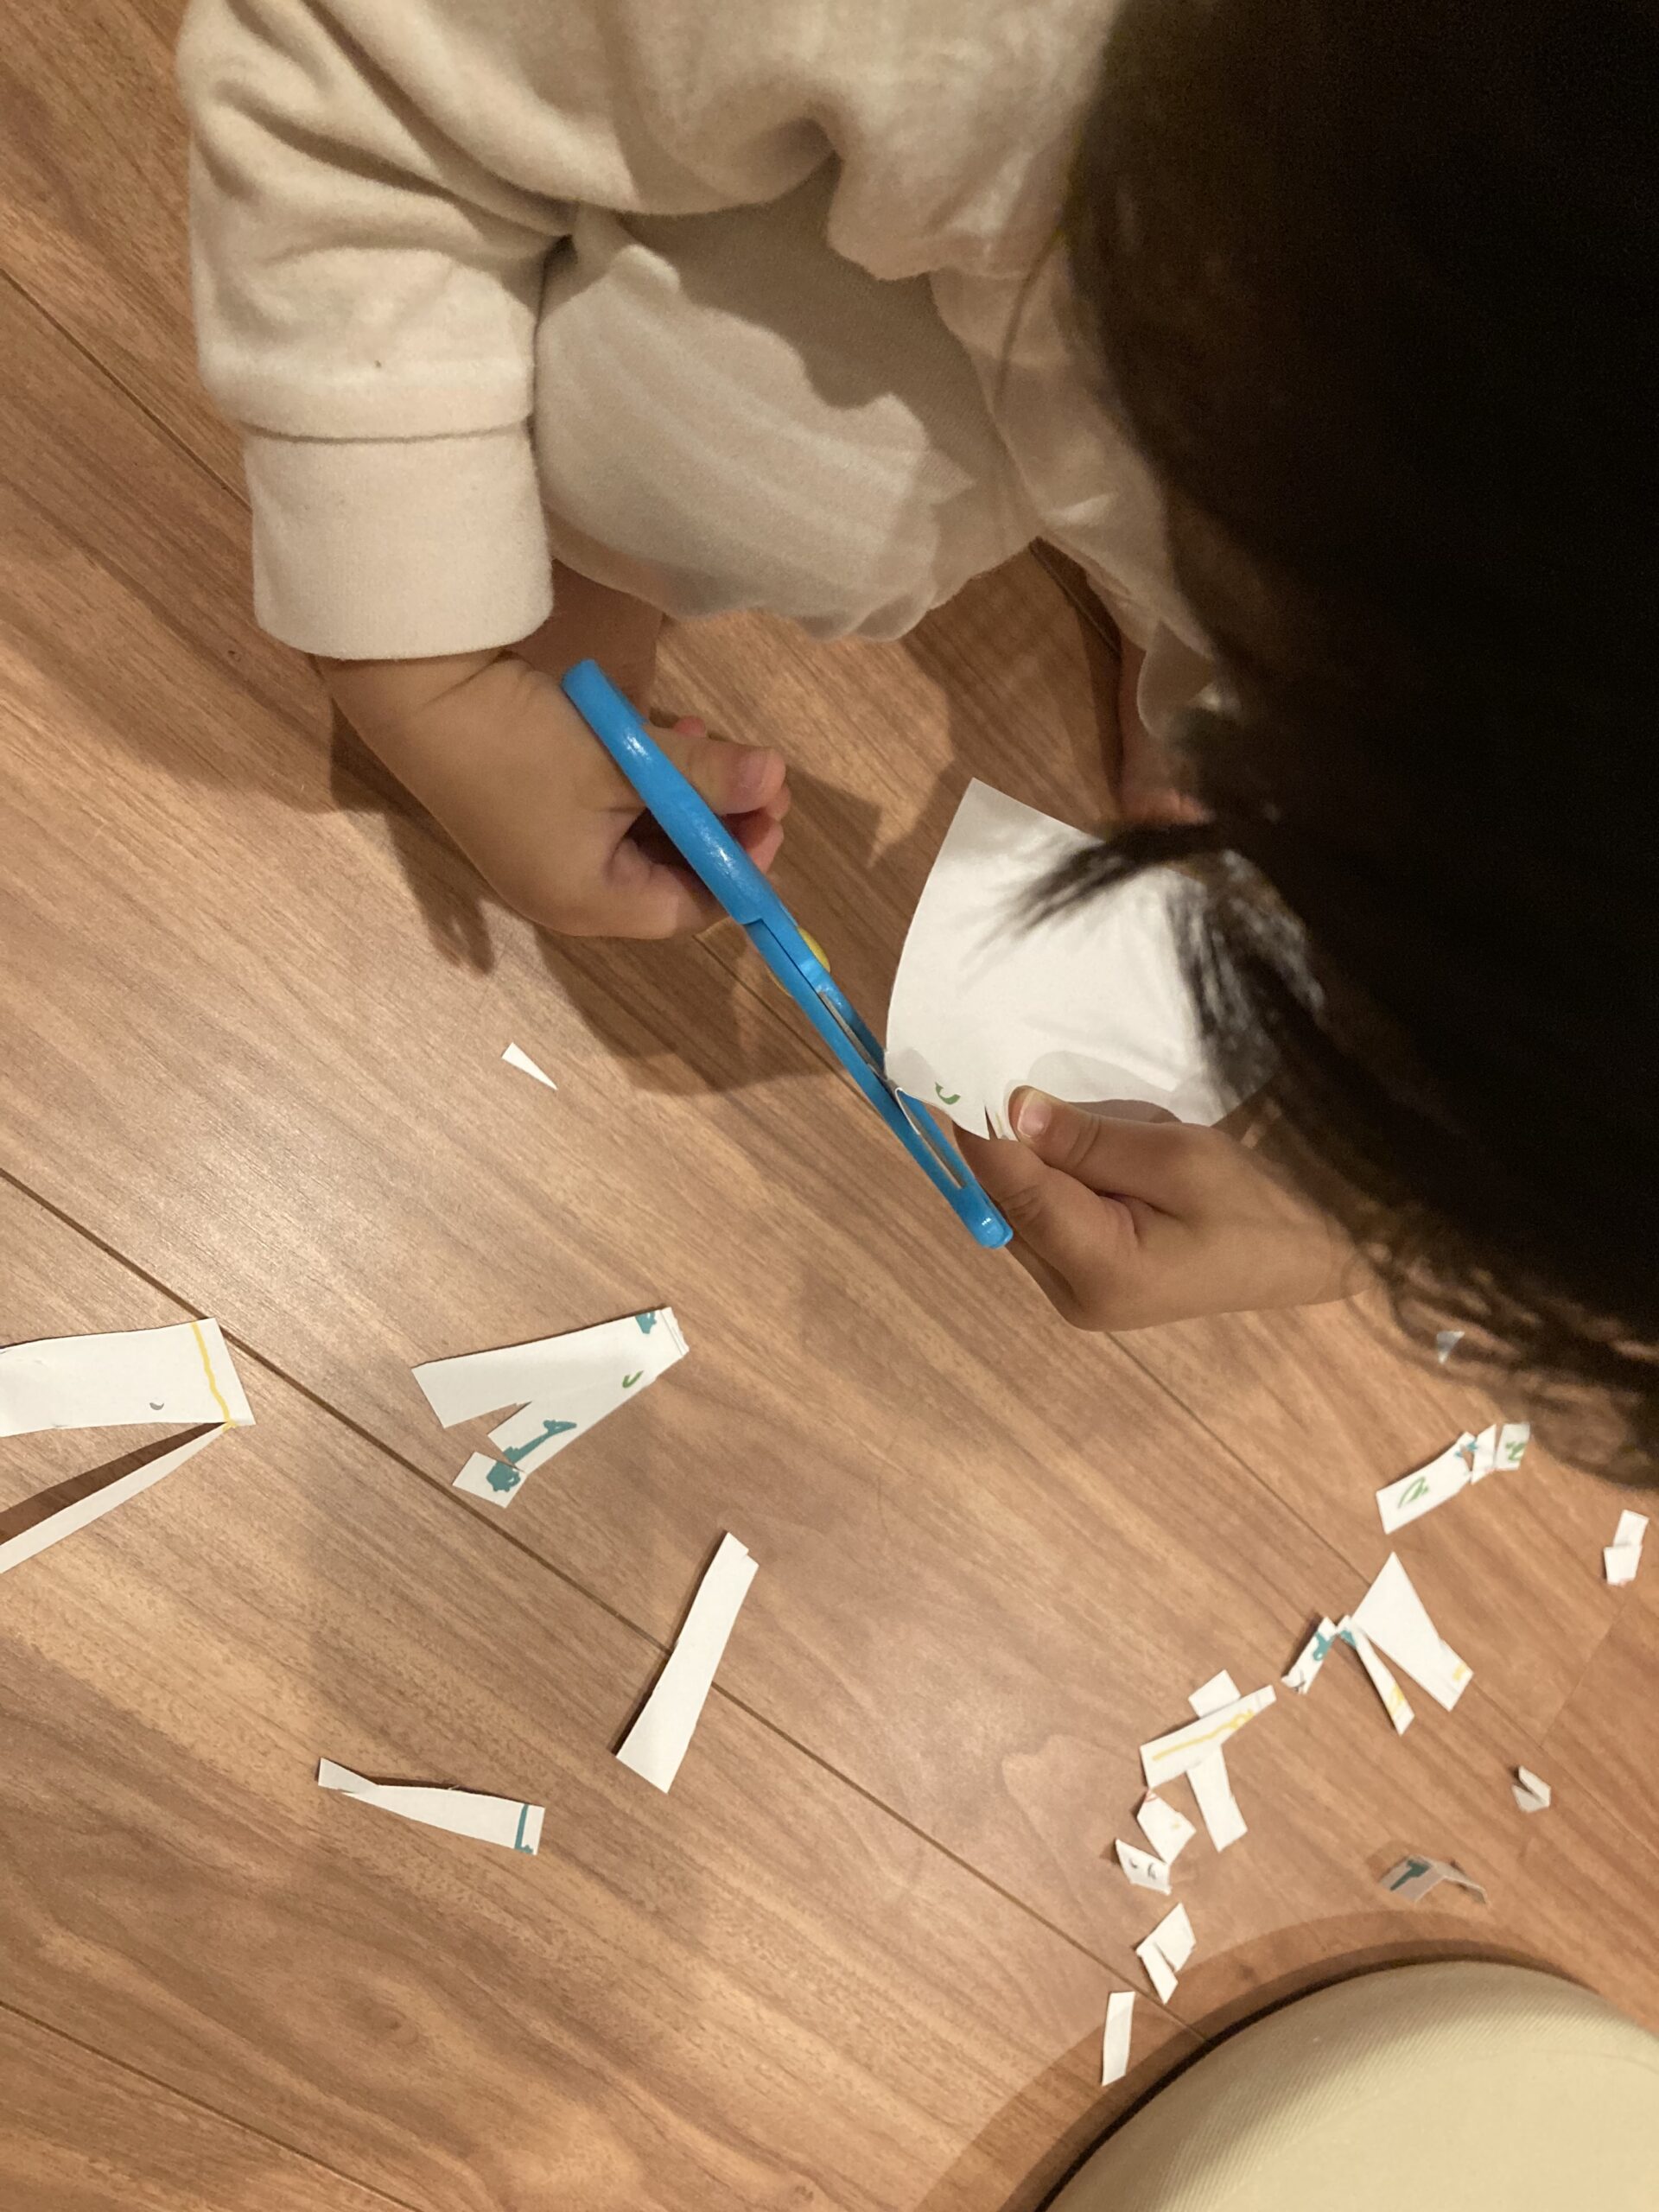 ハサミで紙を切る2歳児